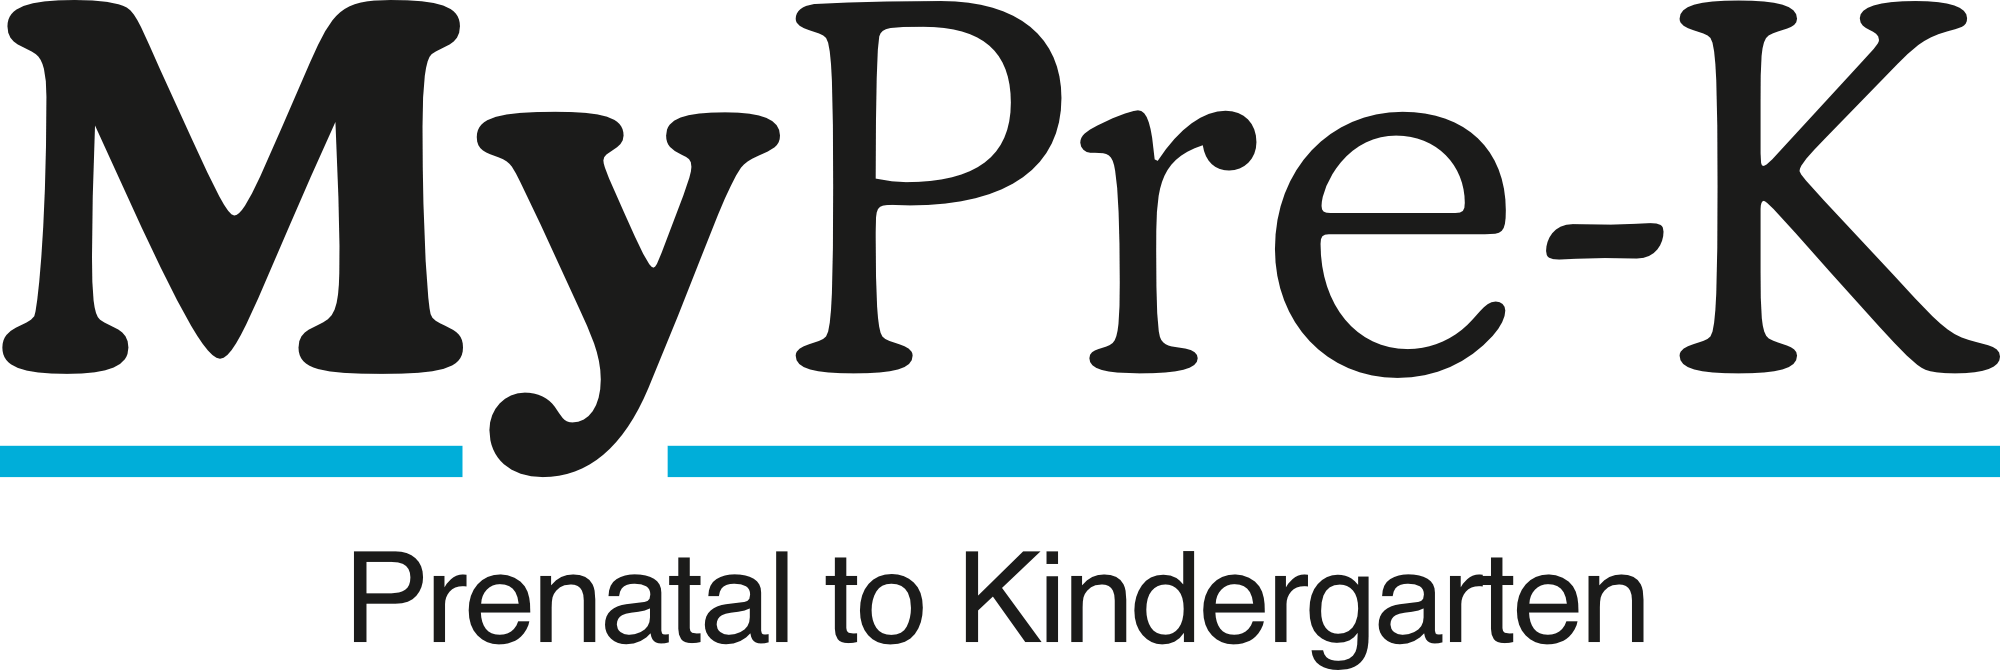 MyPre-K: Prenatal to Kindergarten